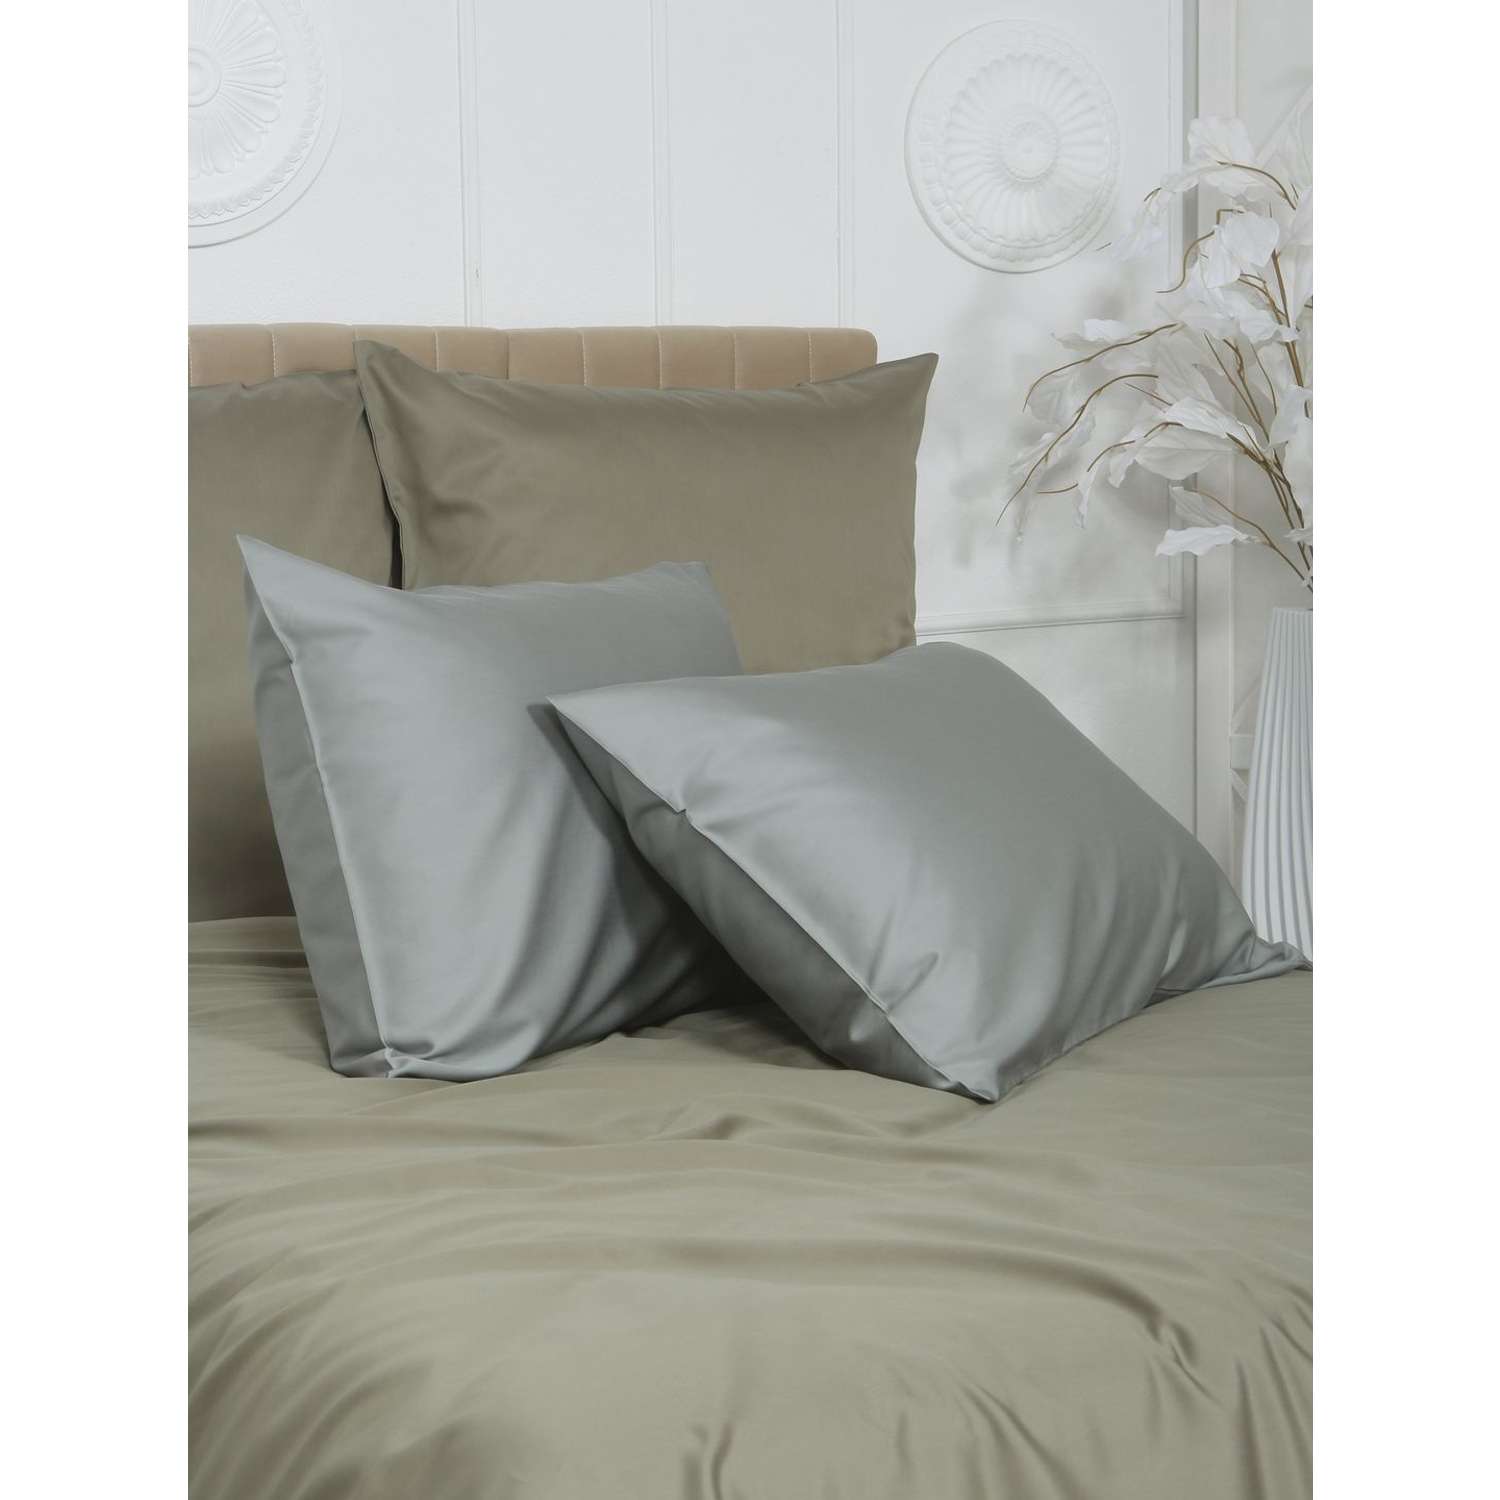 Комплект постельного белья Mona Liza 2 спальный ML Luxury sage тенсель лиоцелл шалфей/камень - фото 5